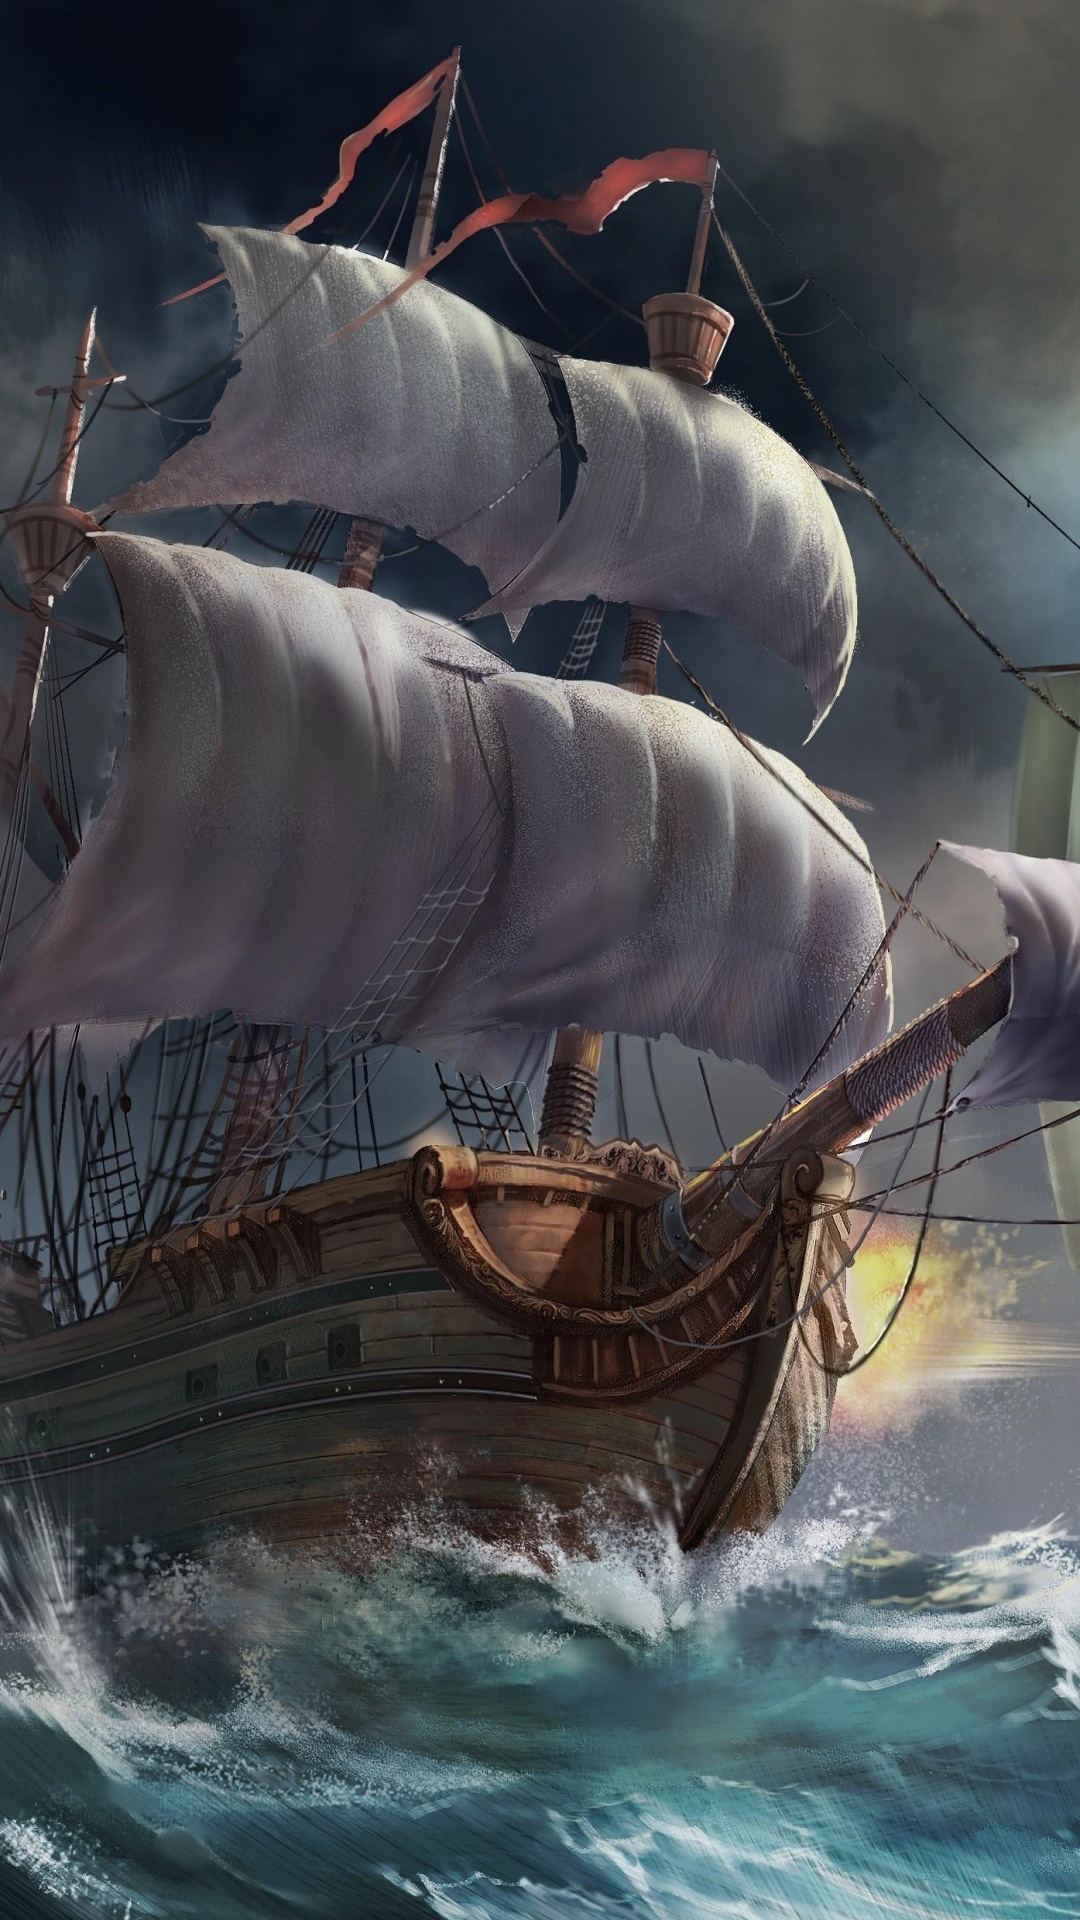 Braunes Und Weißes Segelschiff Auf Dem Wasser. Wallpaper in 1080x1920 Resolution